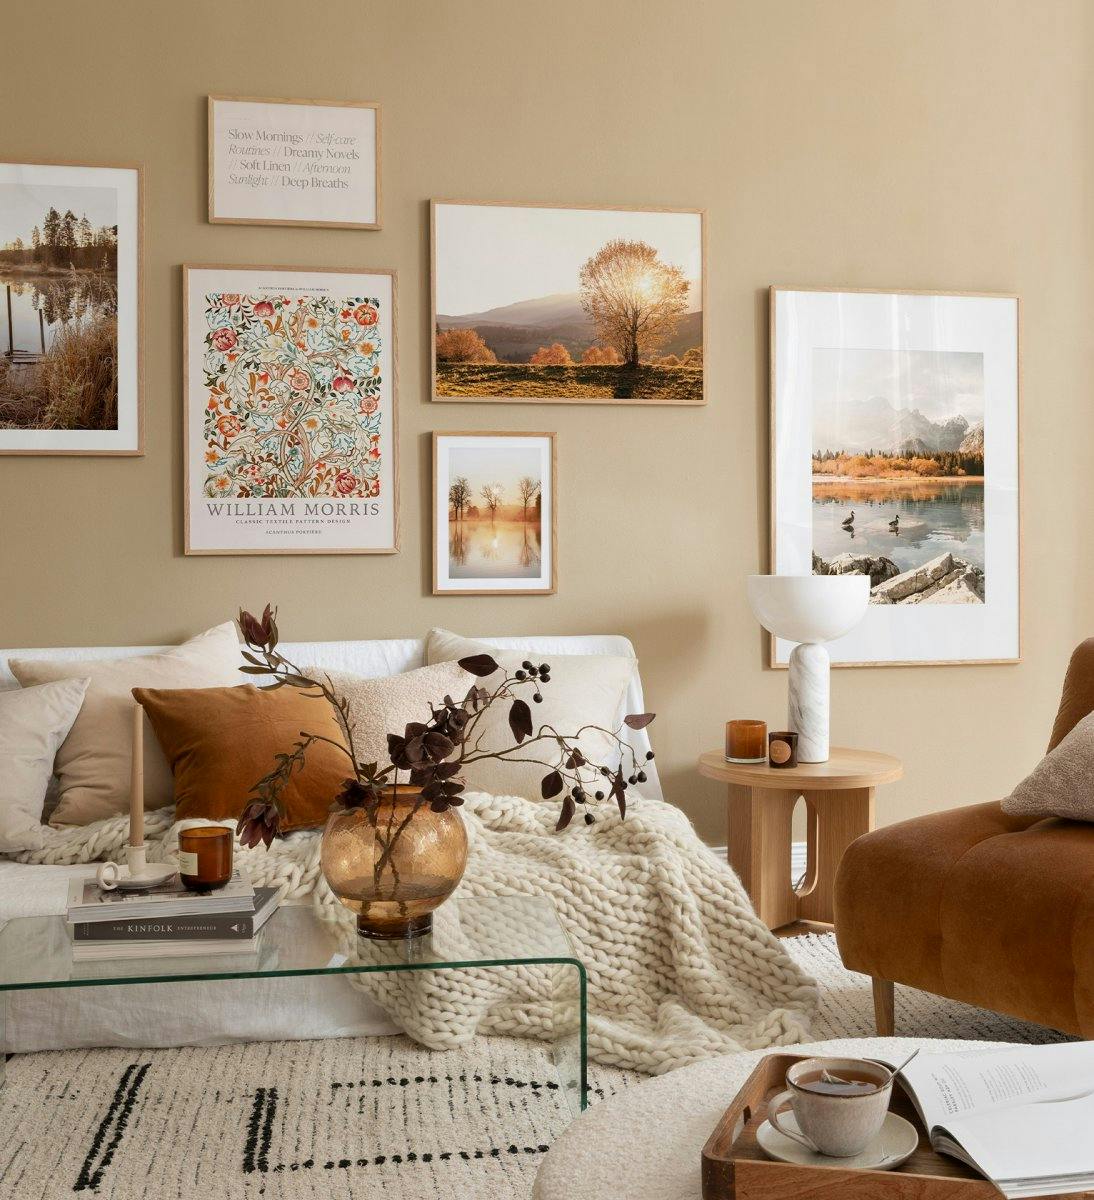 Erstelle die perfekte Bilderwand in deinem Wohnzimmer: Eine warme Farbpalette mit Eichen-Rahmen